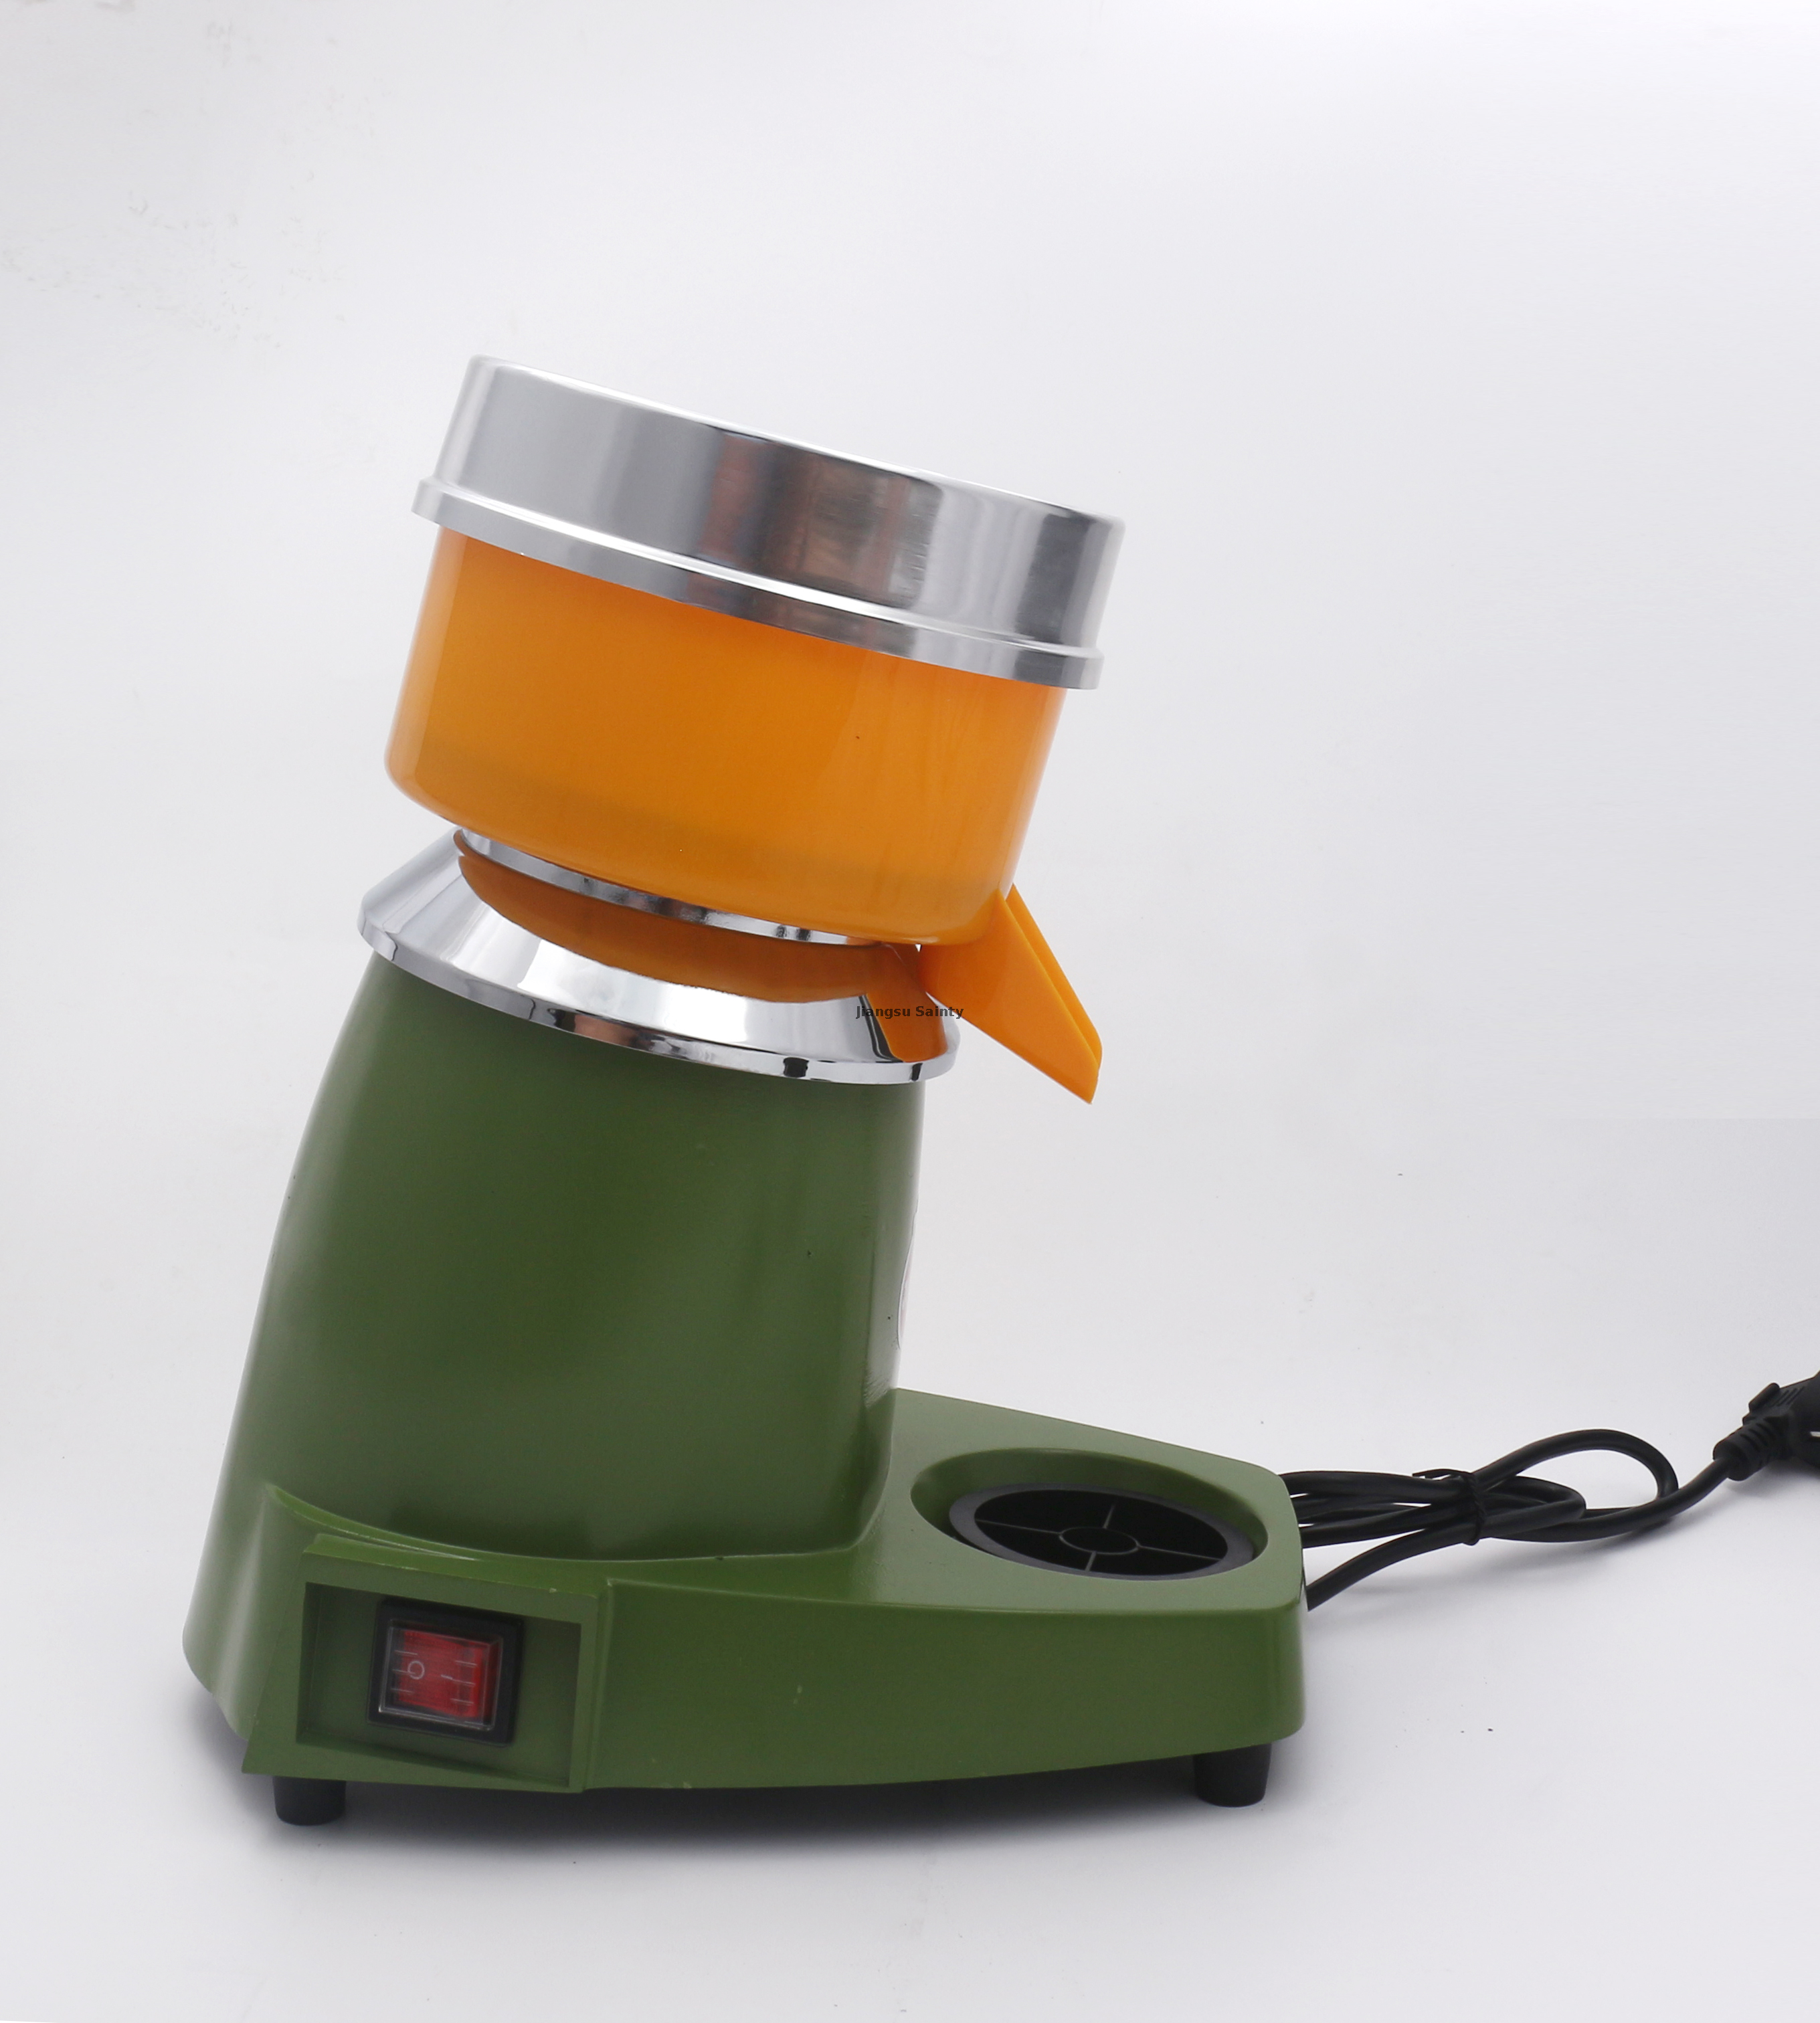  Commercial Large Capacity Juice Machine Electric Freshly Squeezed Orange Lemon Fruit Juicer 